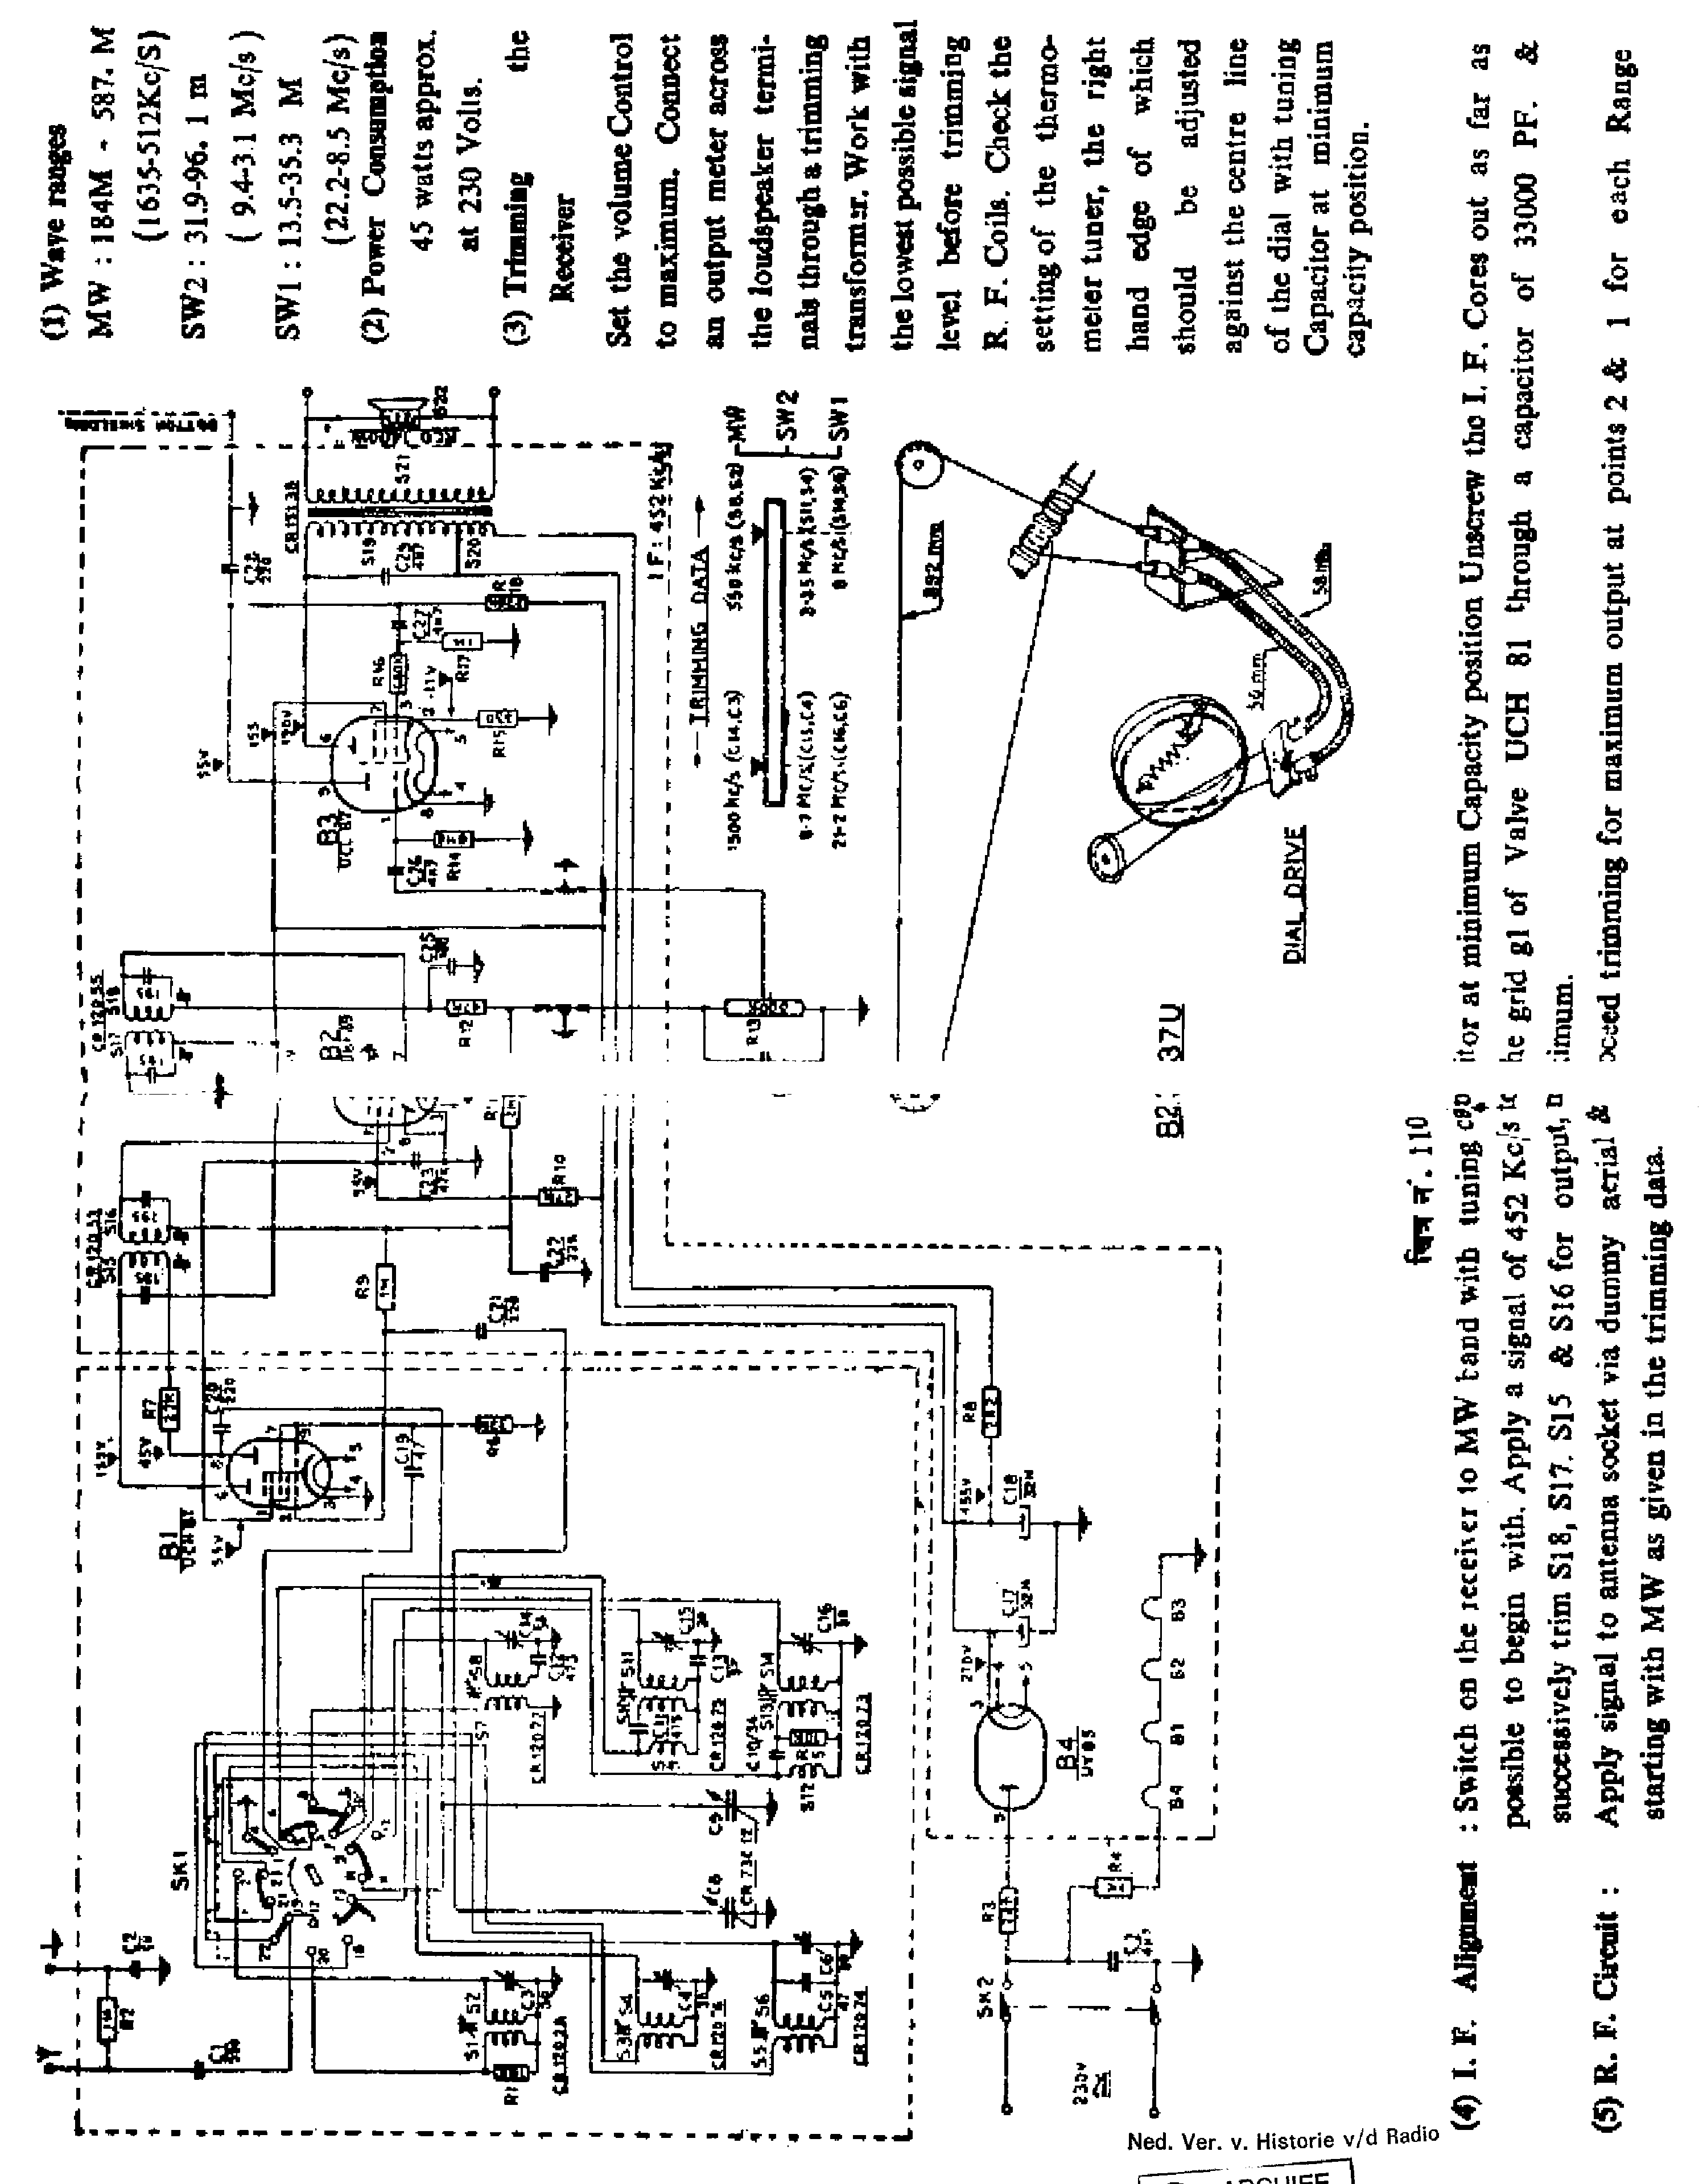 PHILIPS B2CA37U AC-DC RECEIVER SCH service manual (1st page)